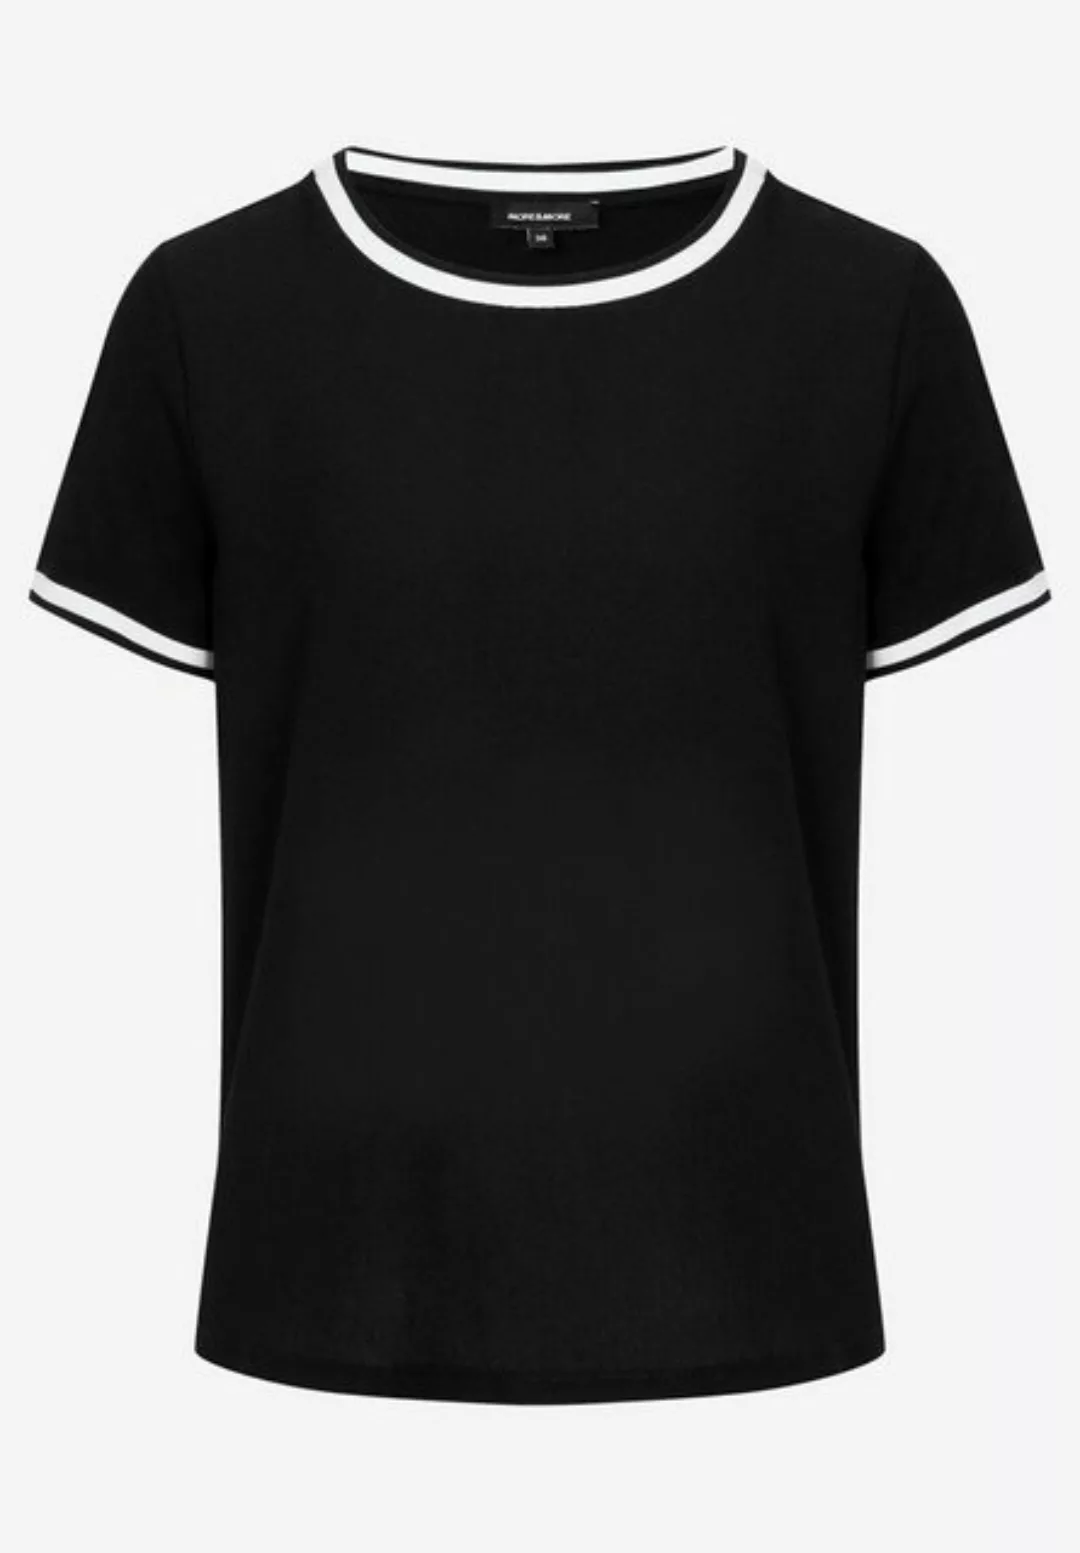 Blusenshirt mit Kontrastabschlüssen, schwarz/weiß, Frühjahrs-Kollektion günstig online kaufen